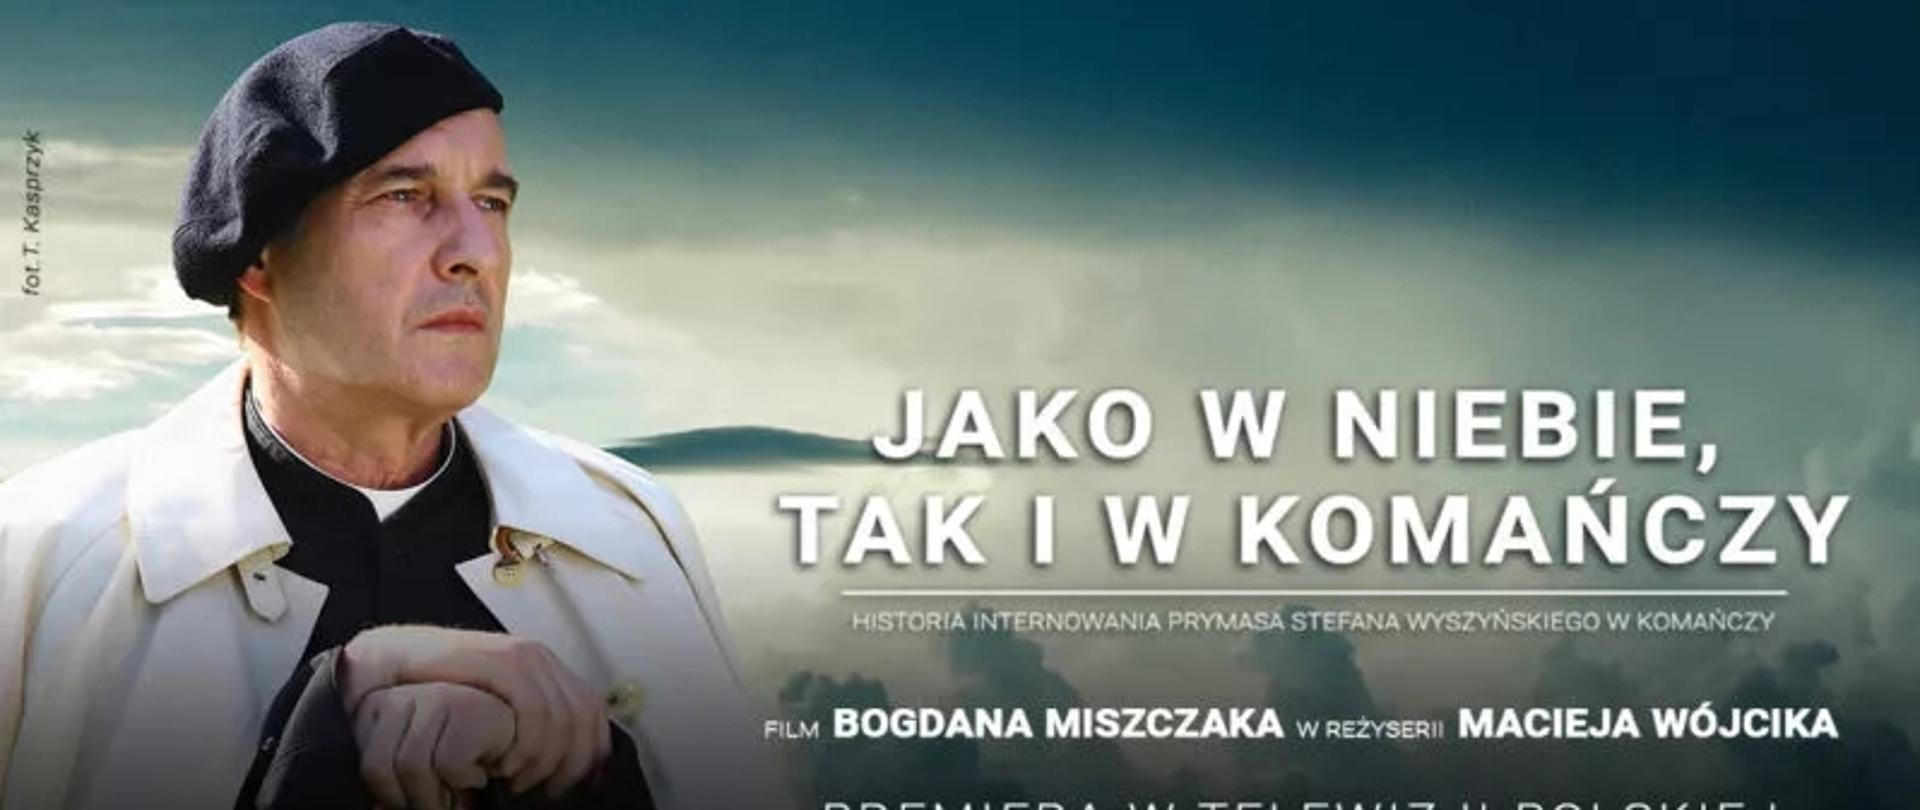 Plakat filmu "Jako w niebie, tak i w Komańczy"